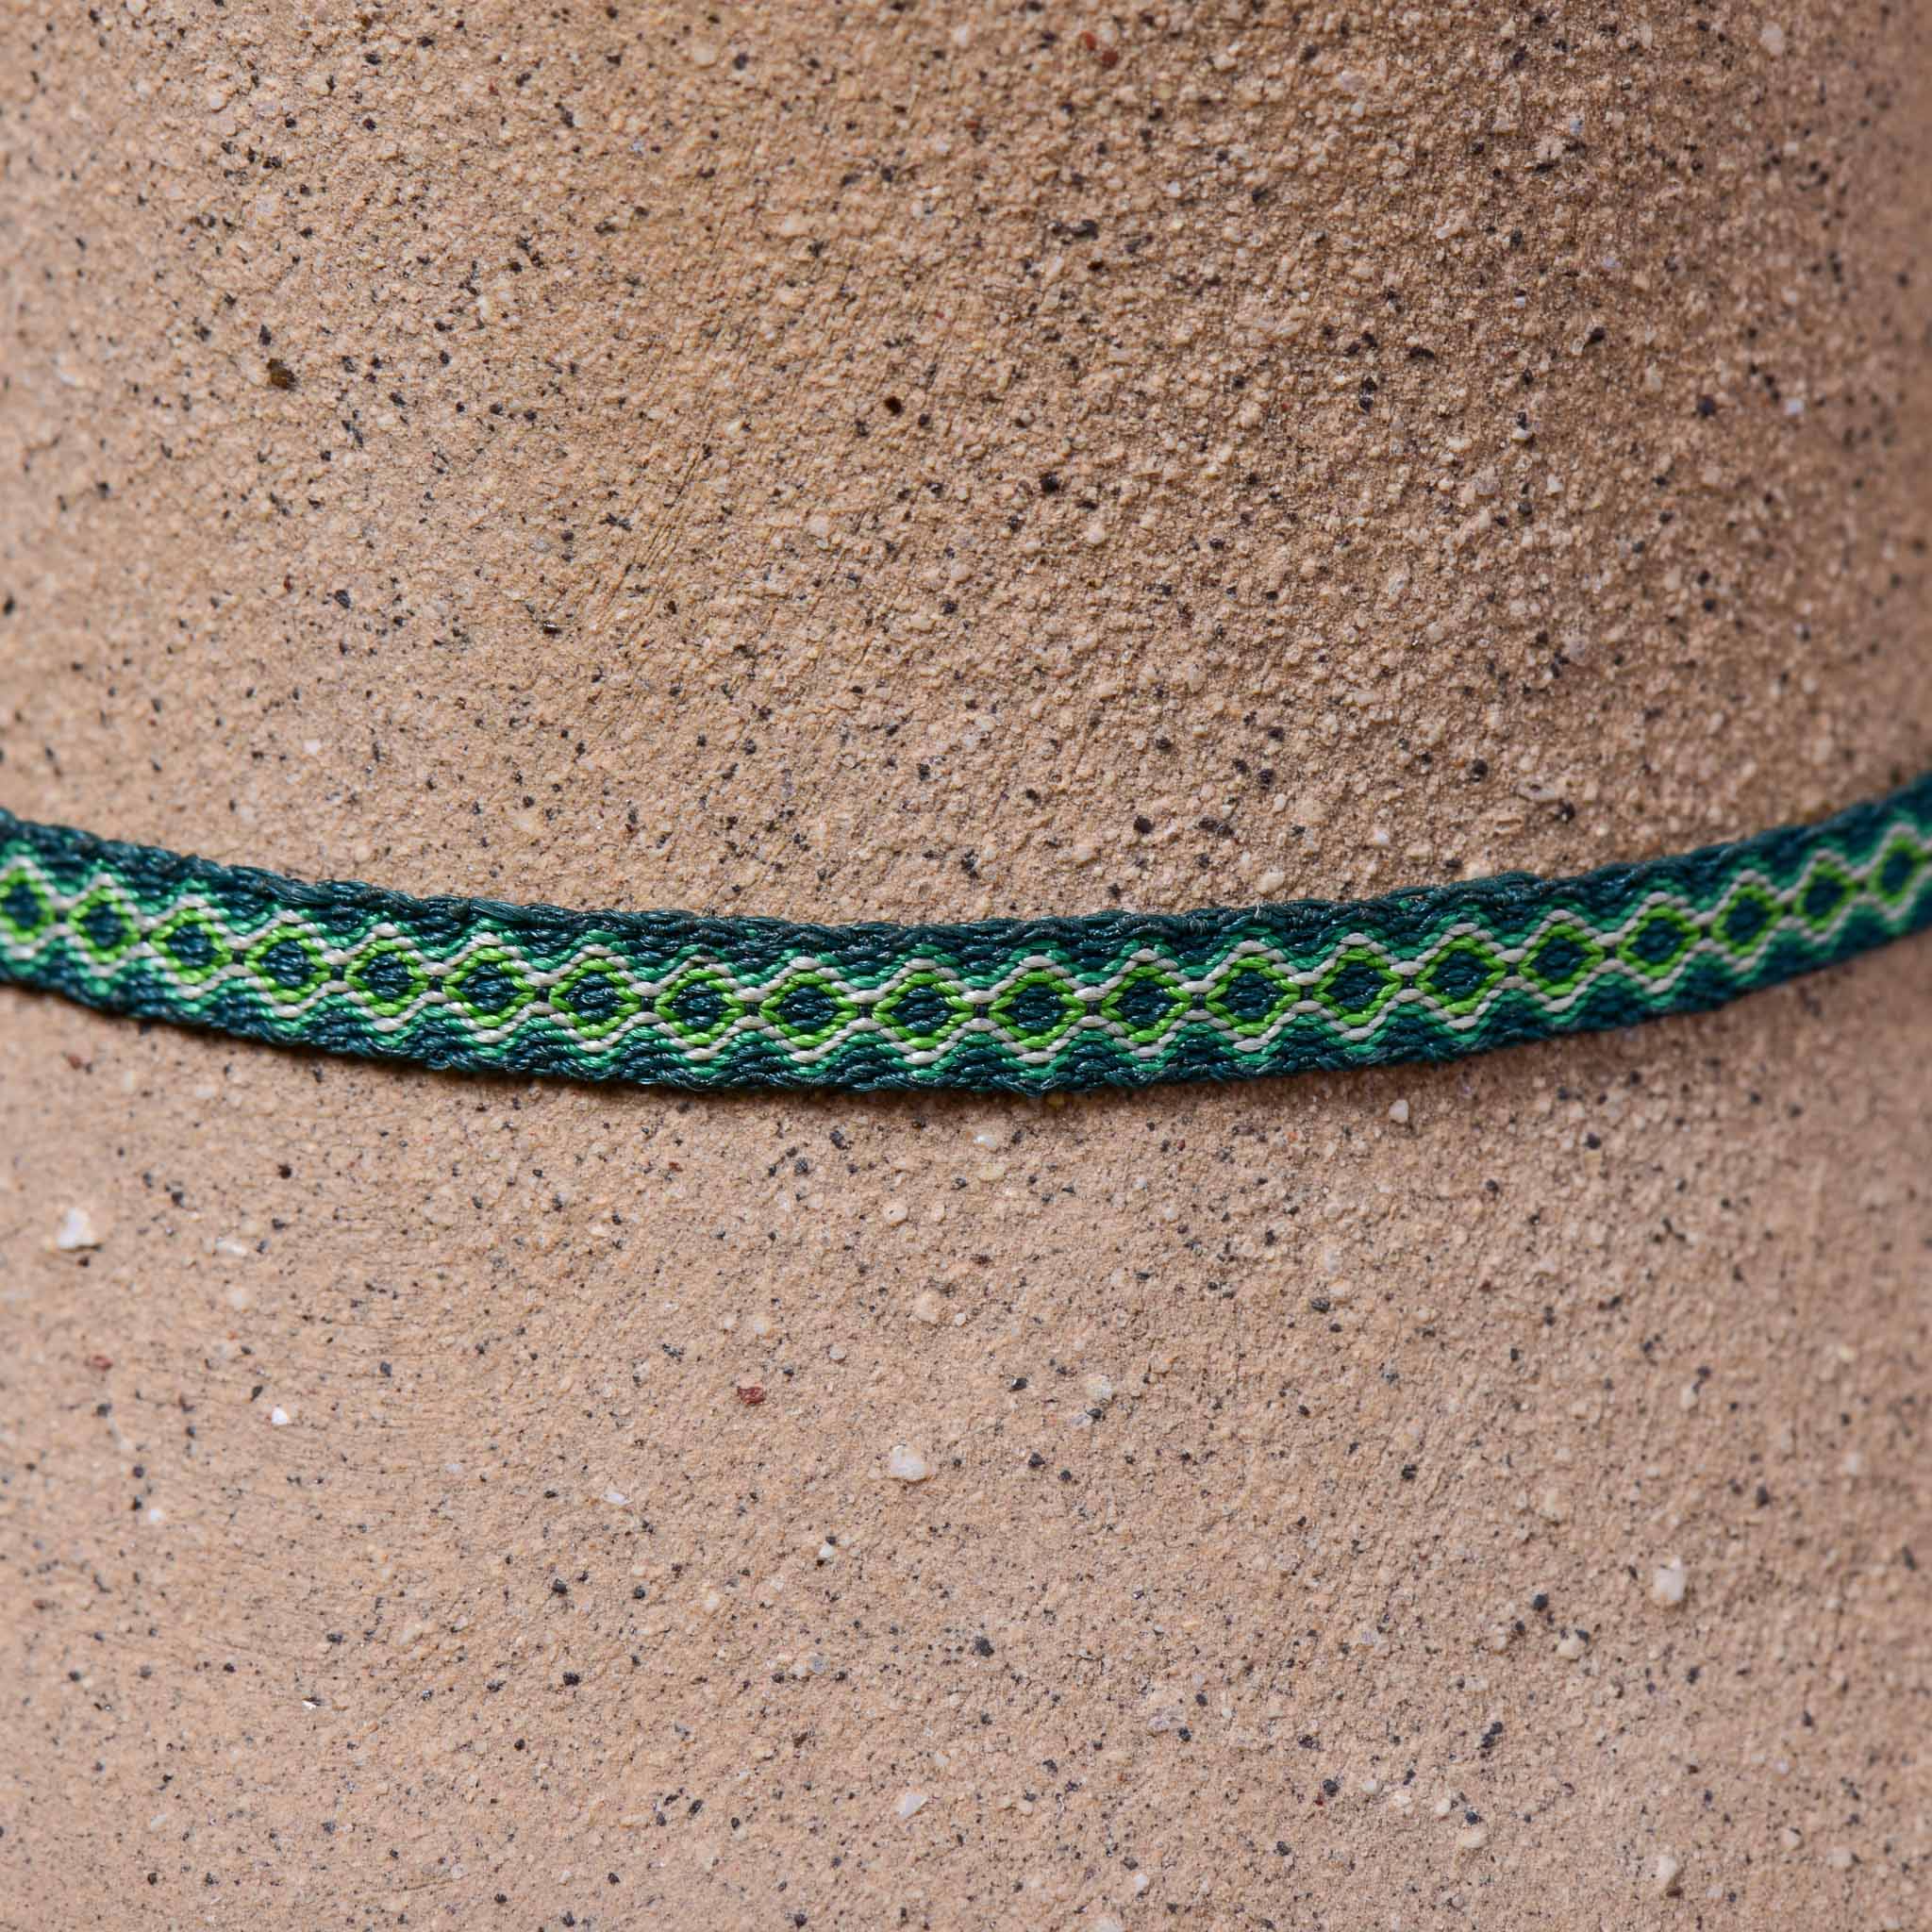 Mhuysca Macrame Thin Bracelet Green